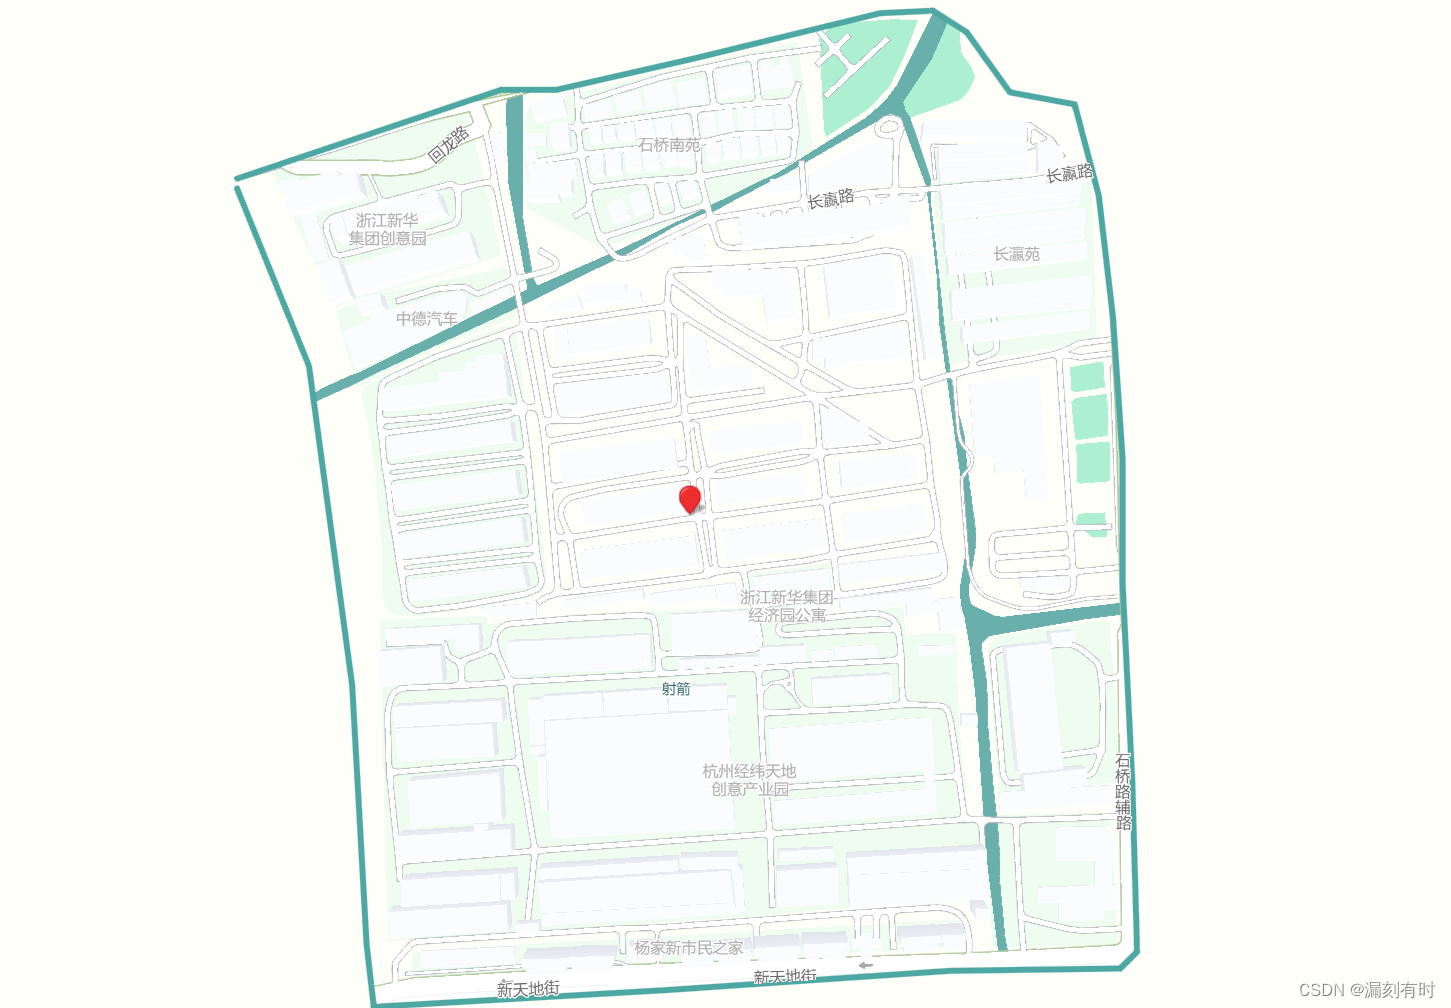 数据可视化大屏百度地图区域掩膜MapMask实现地图指定区域非省市县行政区显示的实战案例解析(JavaScript API GL、个性化地图定制、指定区域经纬度拾取转化)